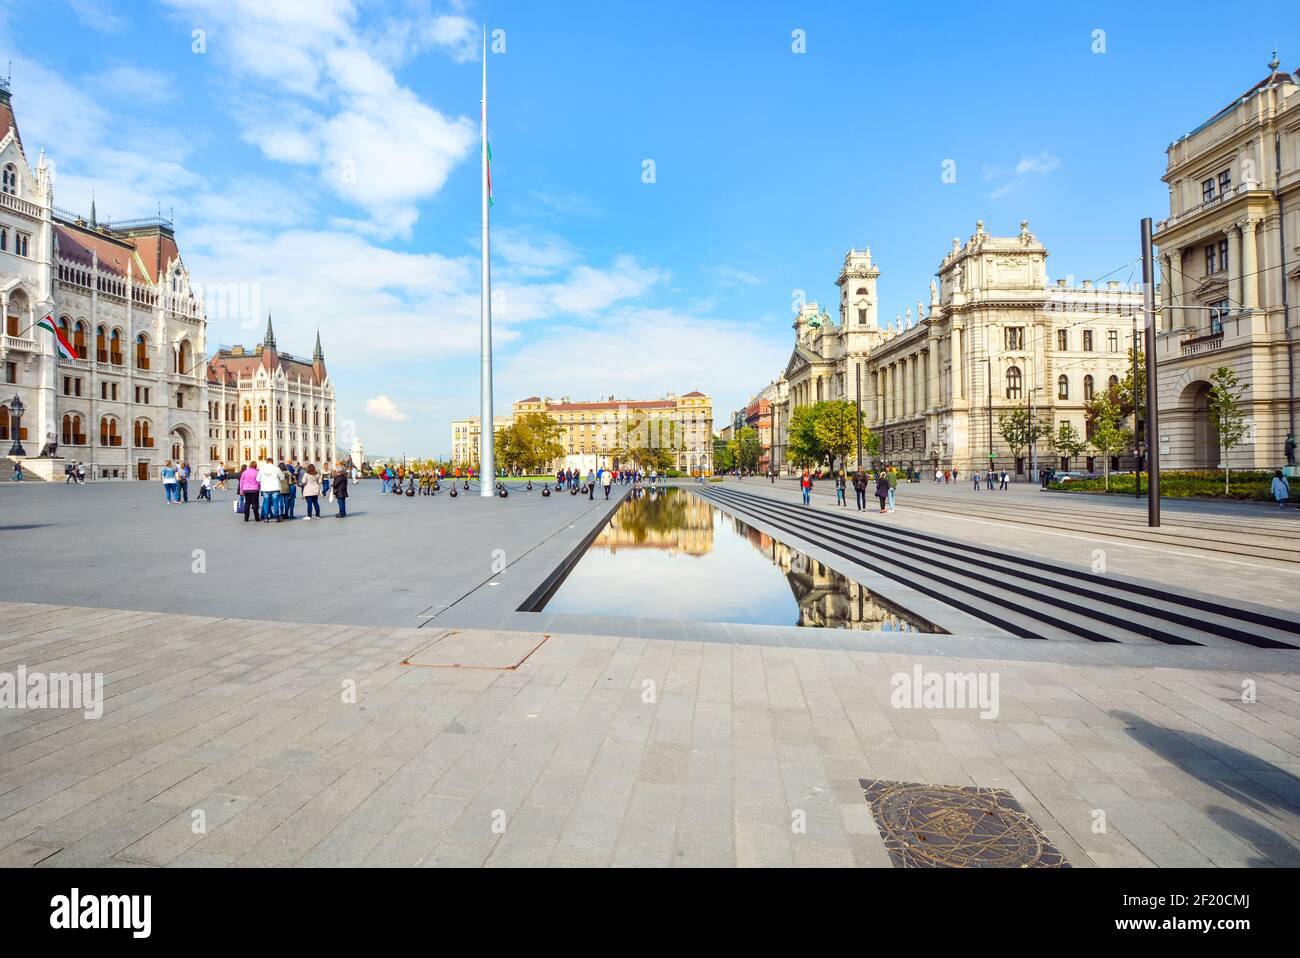 La plaza del parlamento o Kossuth Lajos Ter en Budapest Hungría con turistas disfrutando de la piscina reflectante del edificio del Parlamento en un día soleado Foto de stock